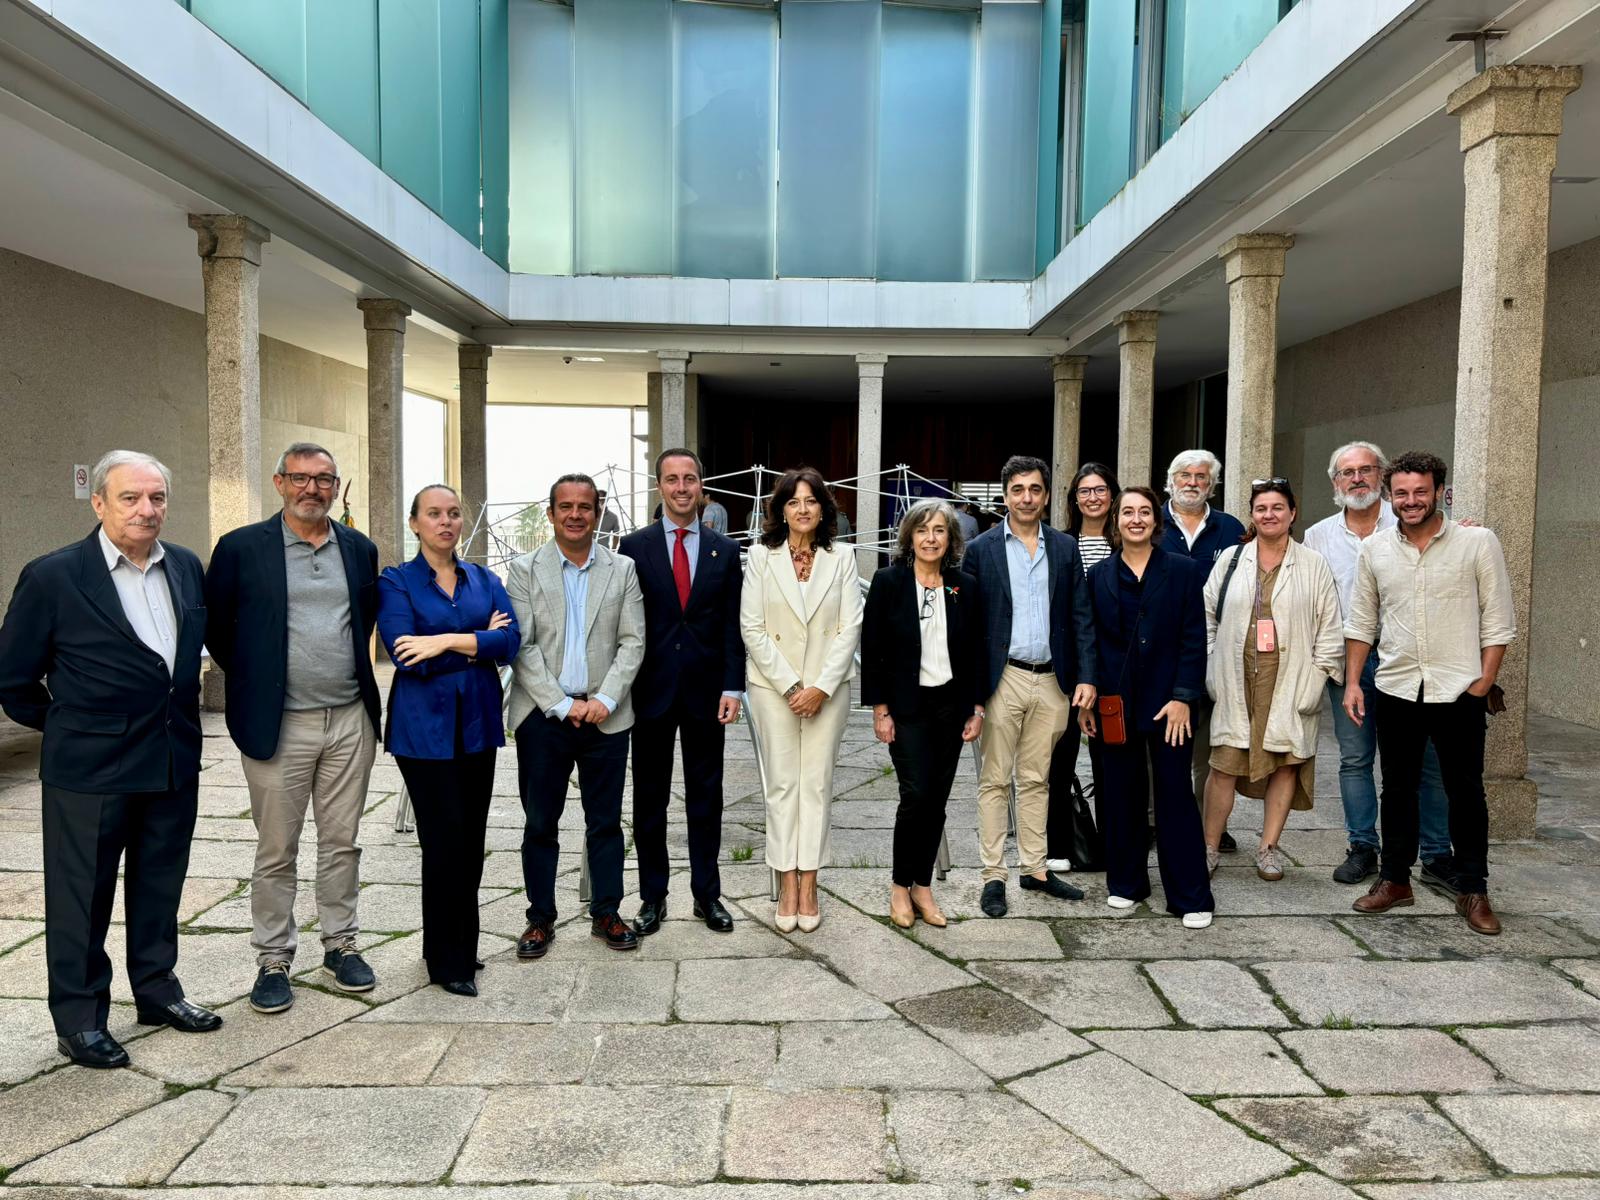 Galmés persegueix que la Menorca Talaiòtica entri a l'Alianza de Paisajes Culturales